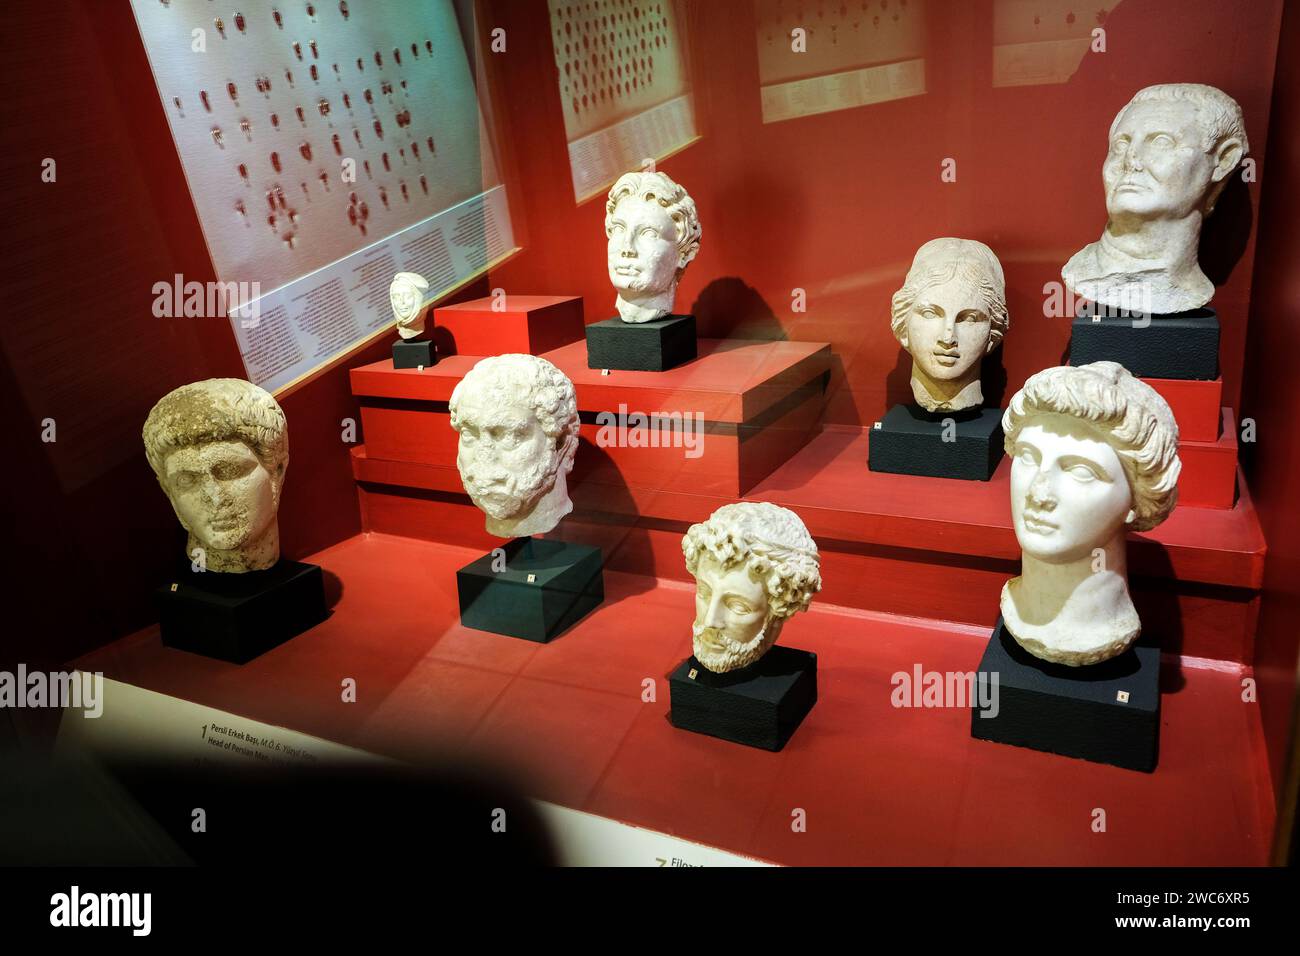 De nombreux objets historiques importants sont exposés au Musée des civilisations anatoliennes à Ankara./turquie. Banque D'Images